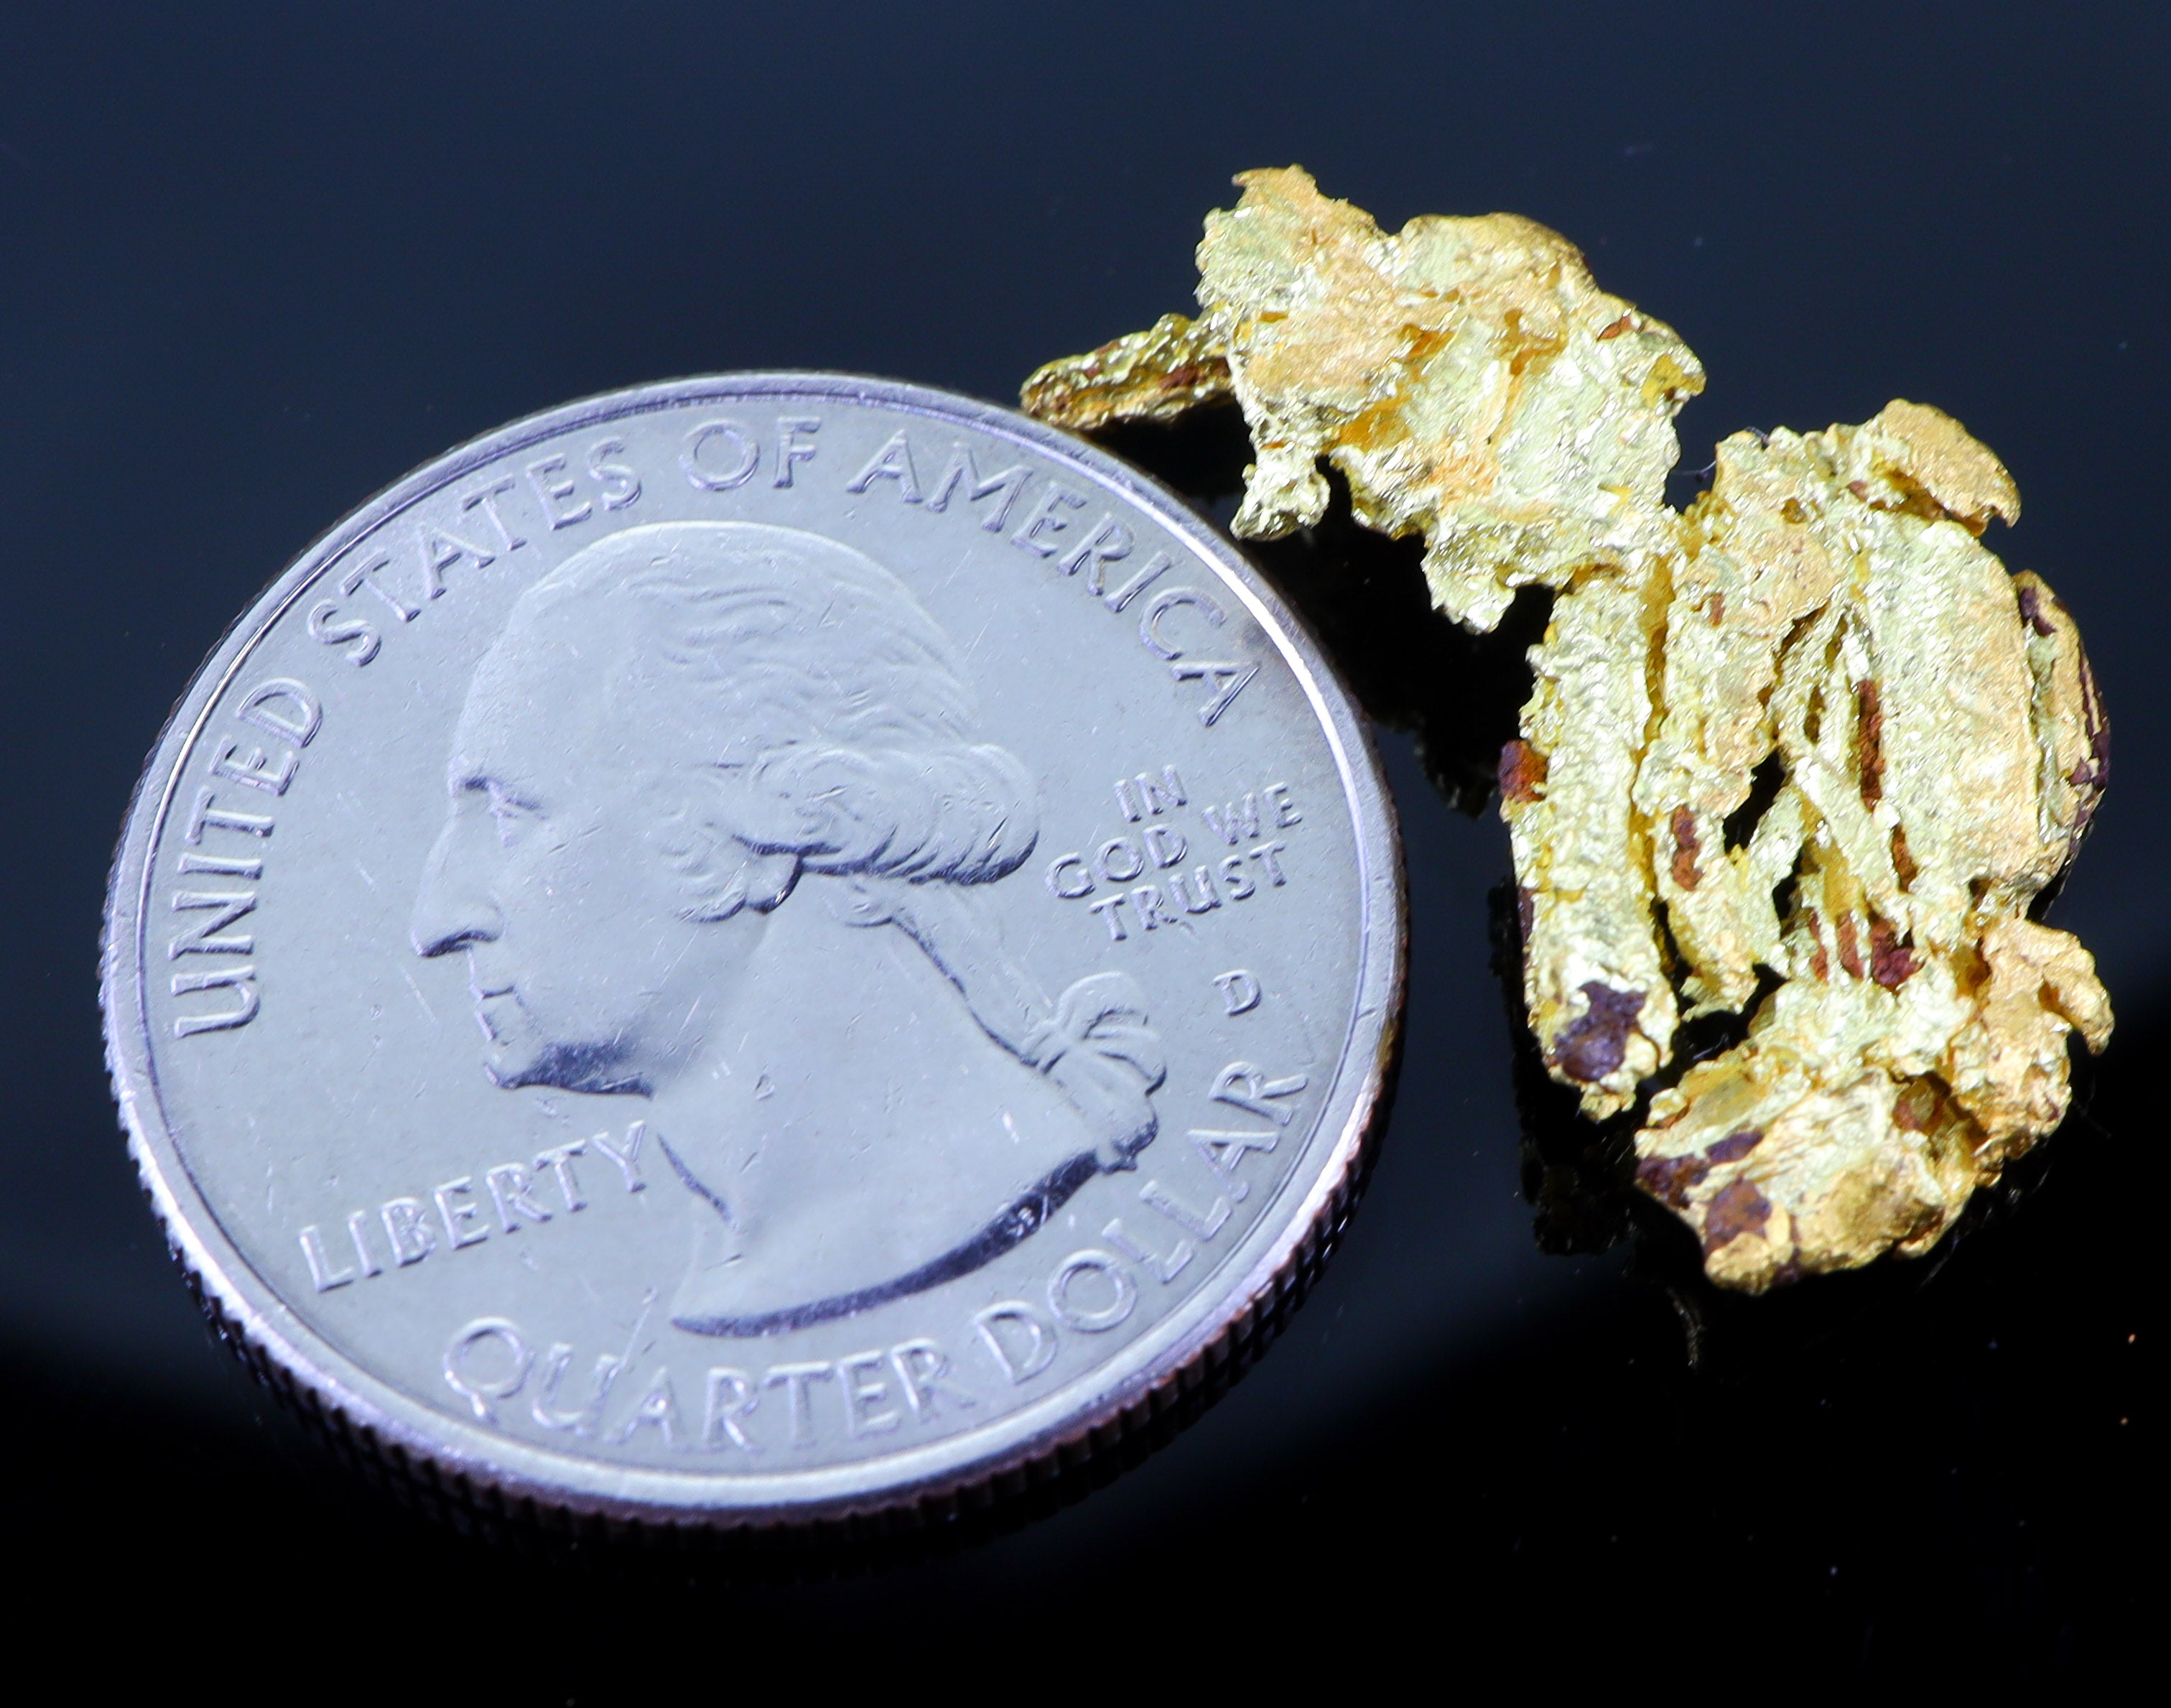 #15 Brazil Crystalline Dendretic Natural Gold Nugget 4.55 grams